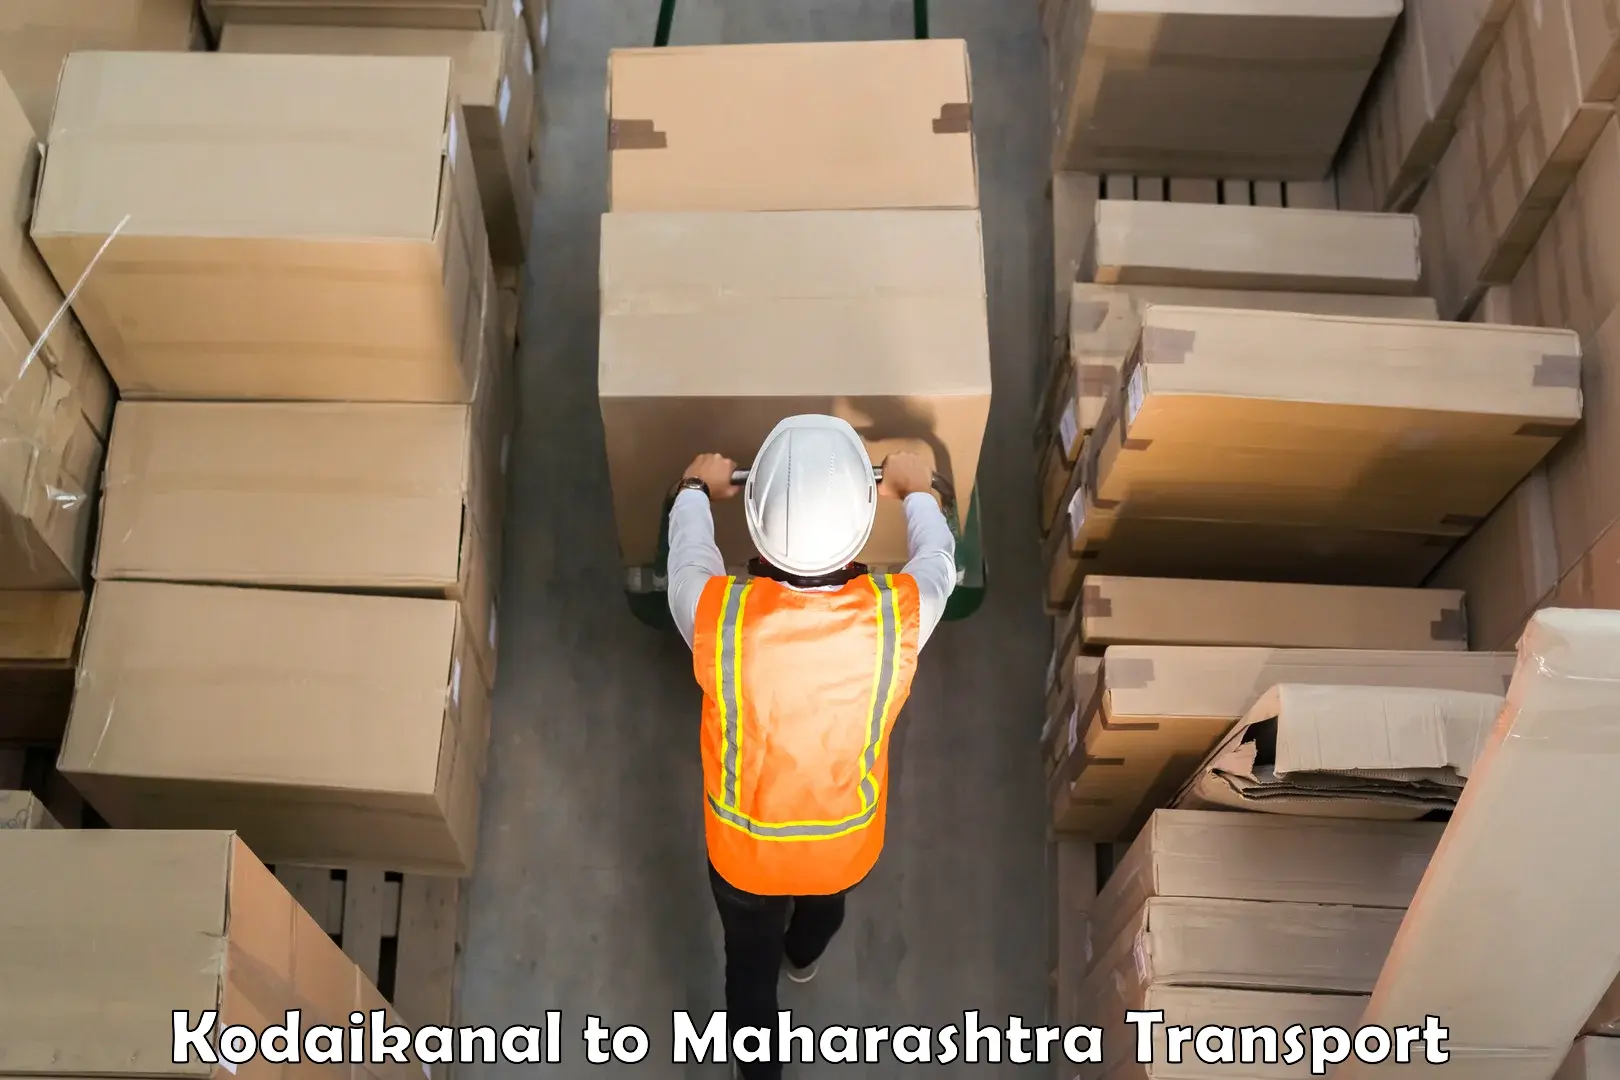 Truck transport companies in India Kodaikanal to Chiplun